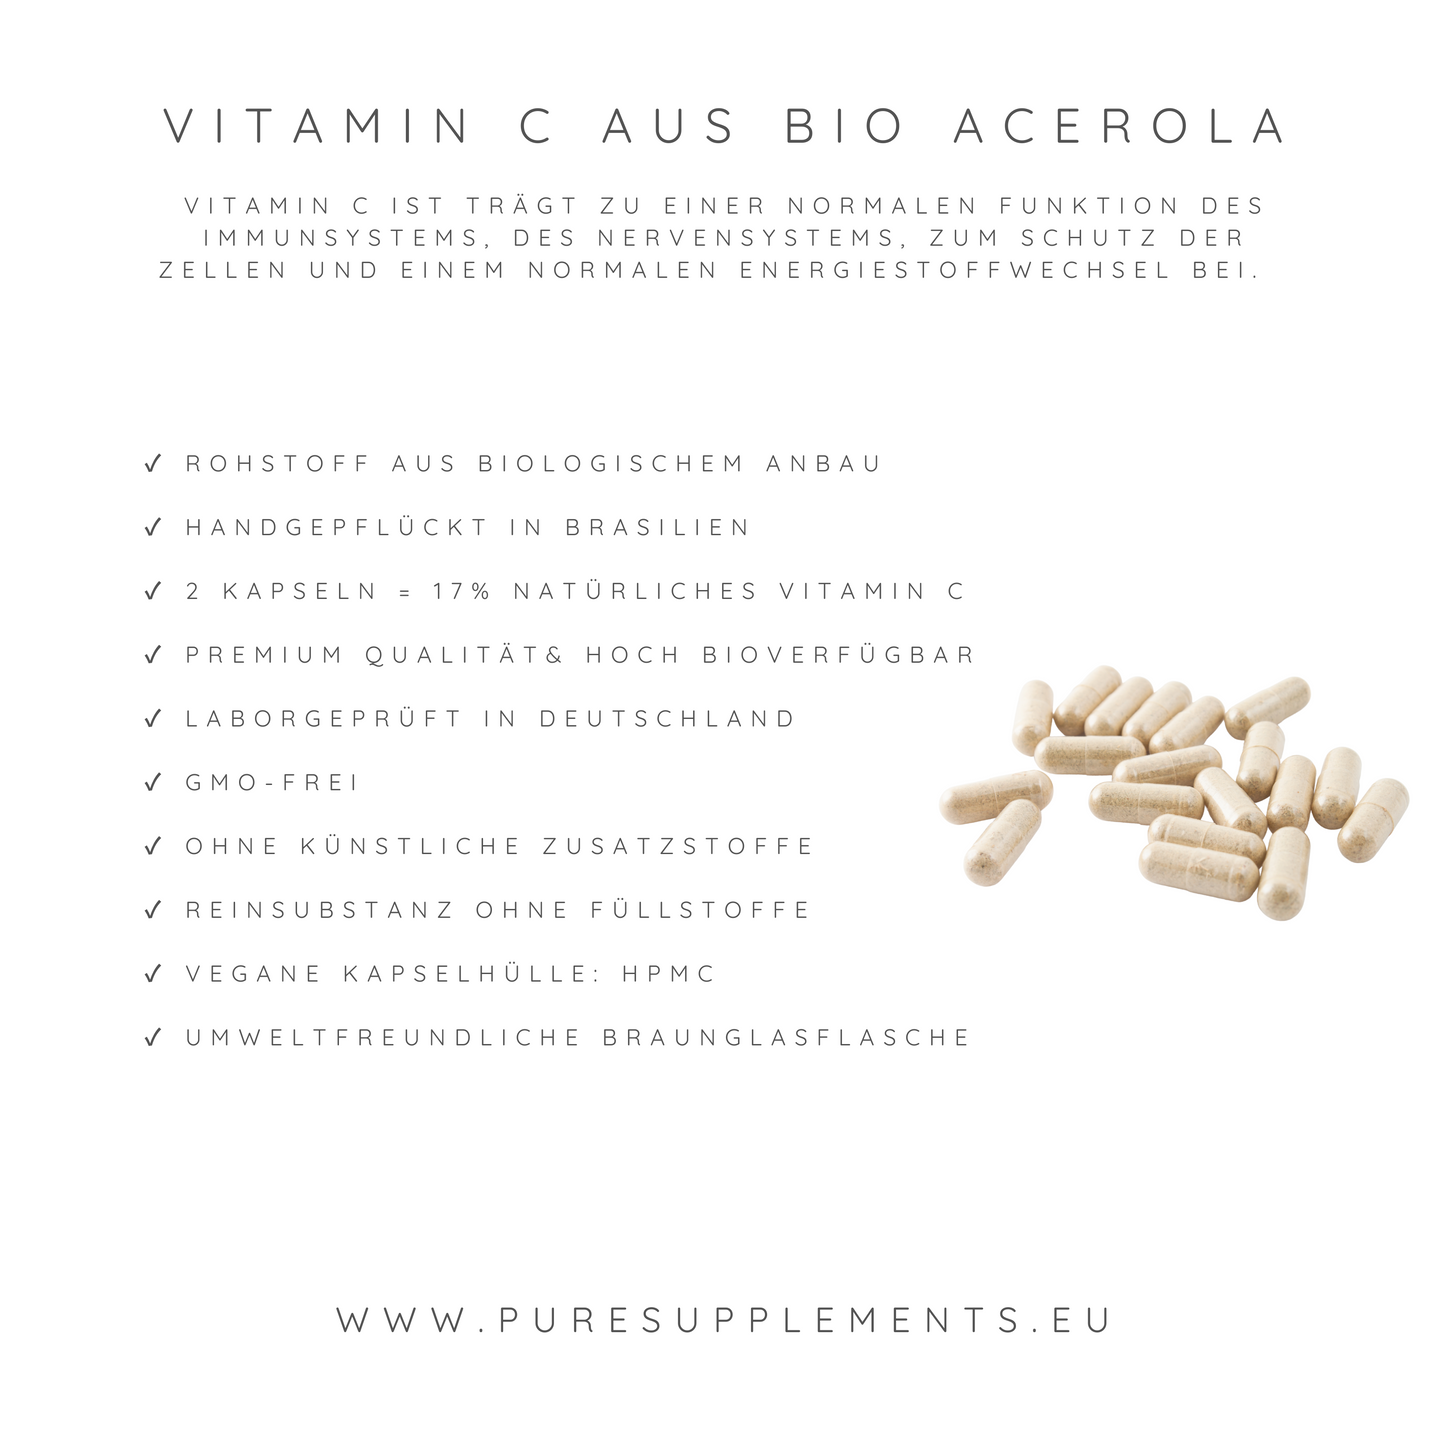 Premium Bio Acerola Kirsche Vitamin C hochdosiert 17% (Wildwuchs, XL Pack)